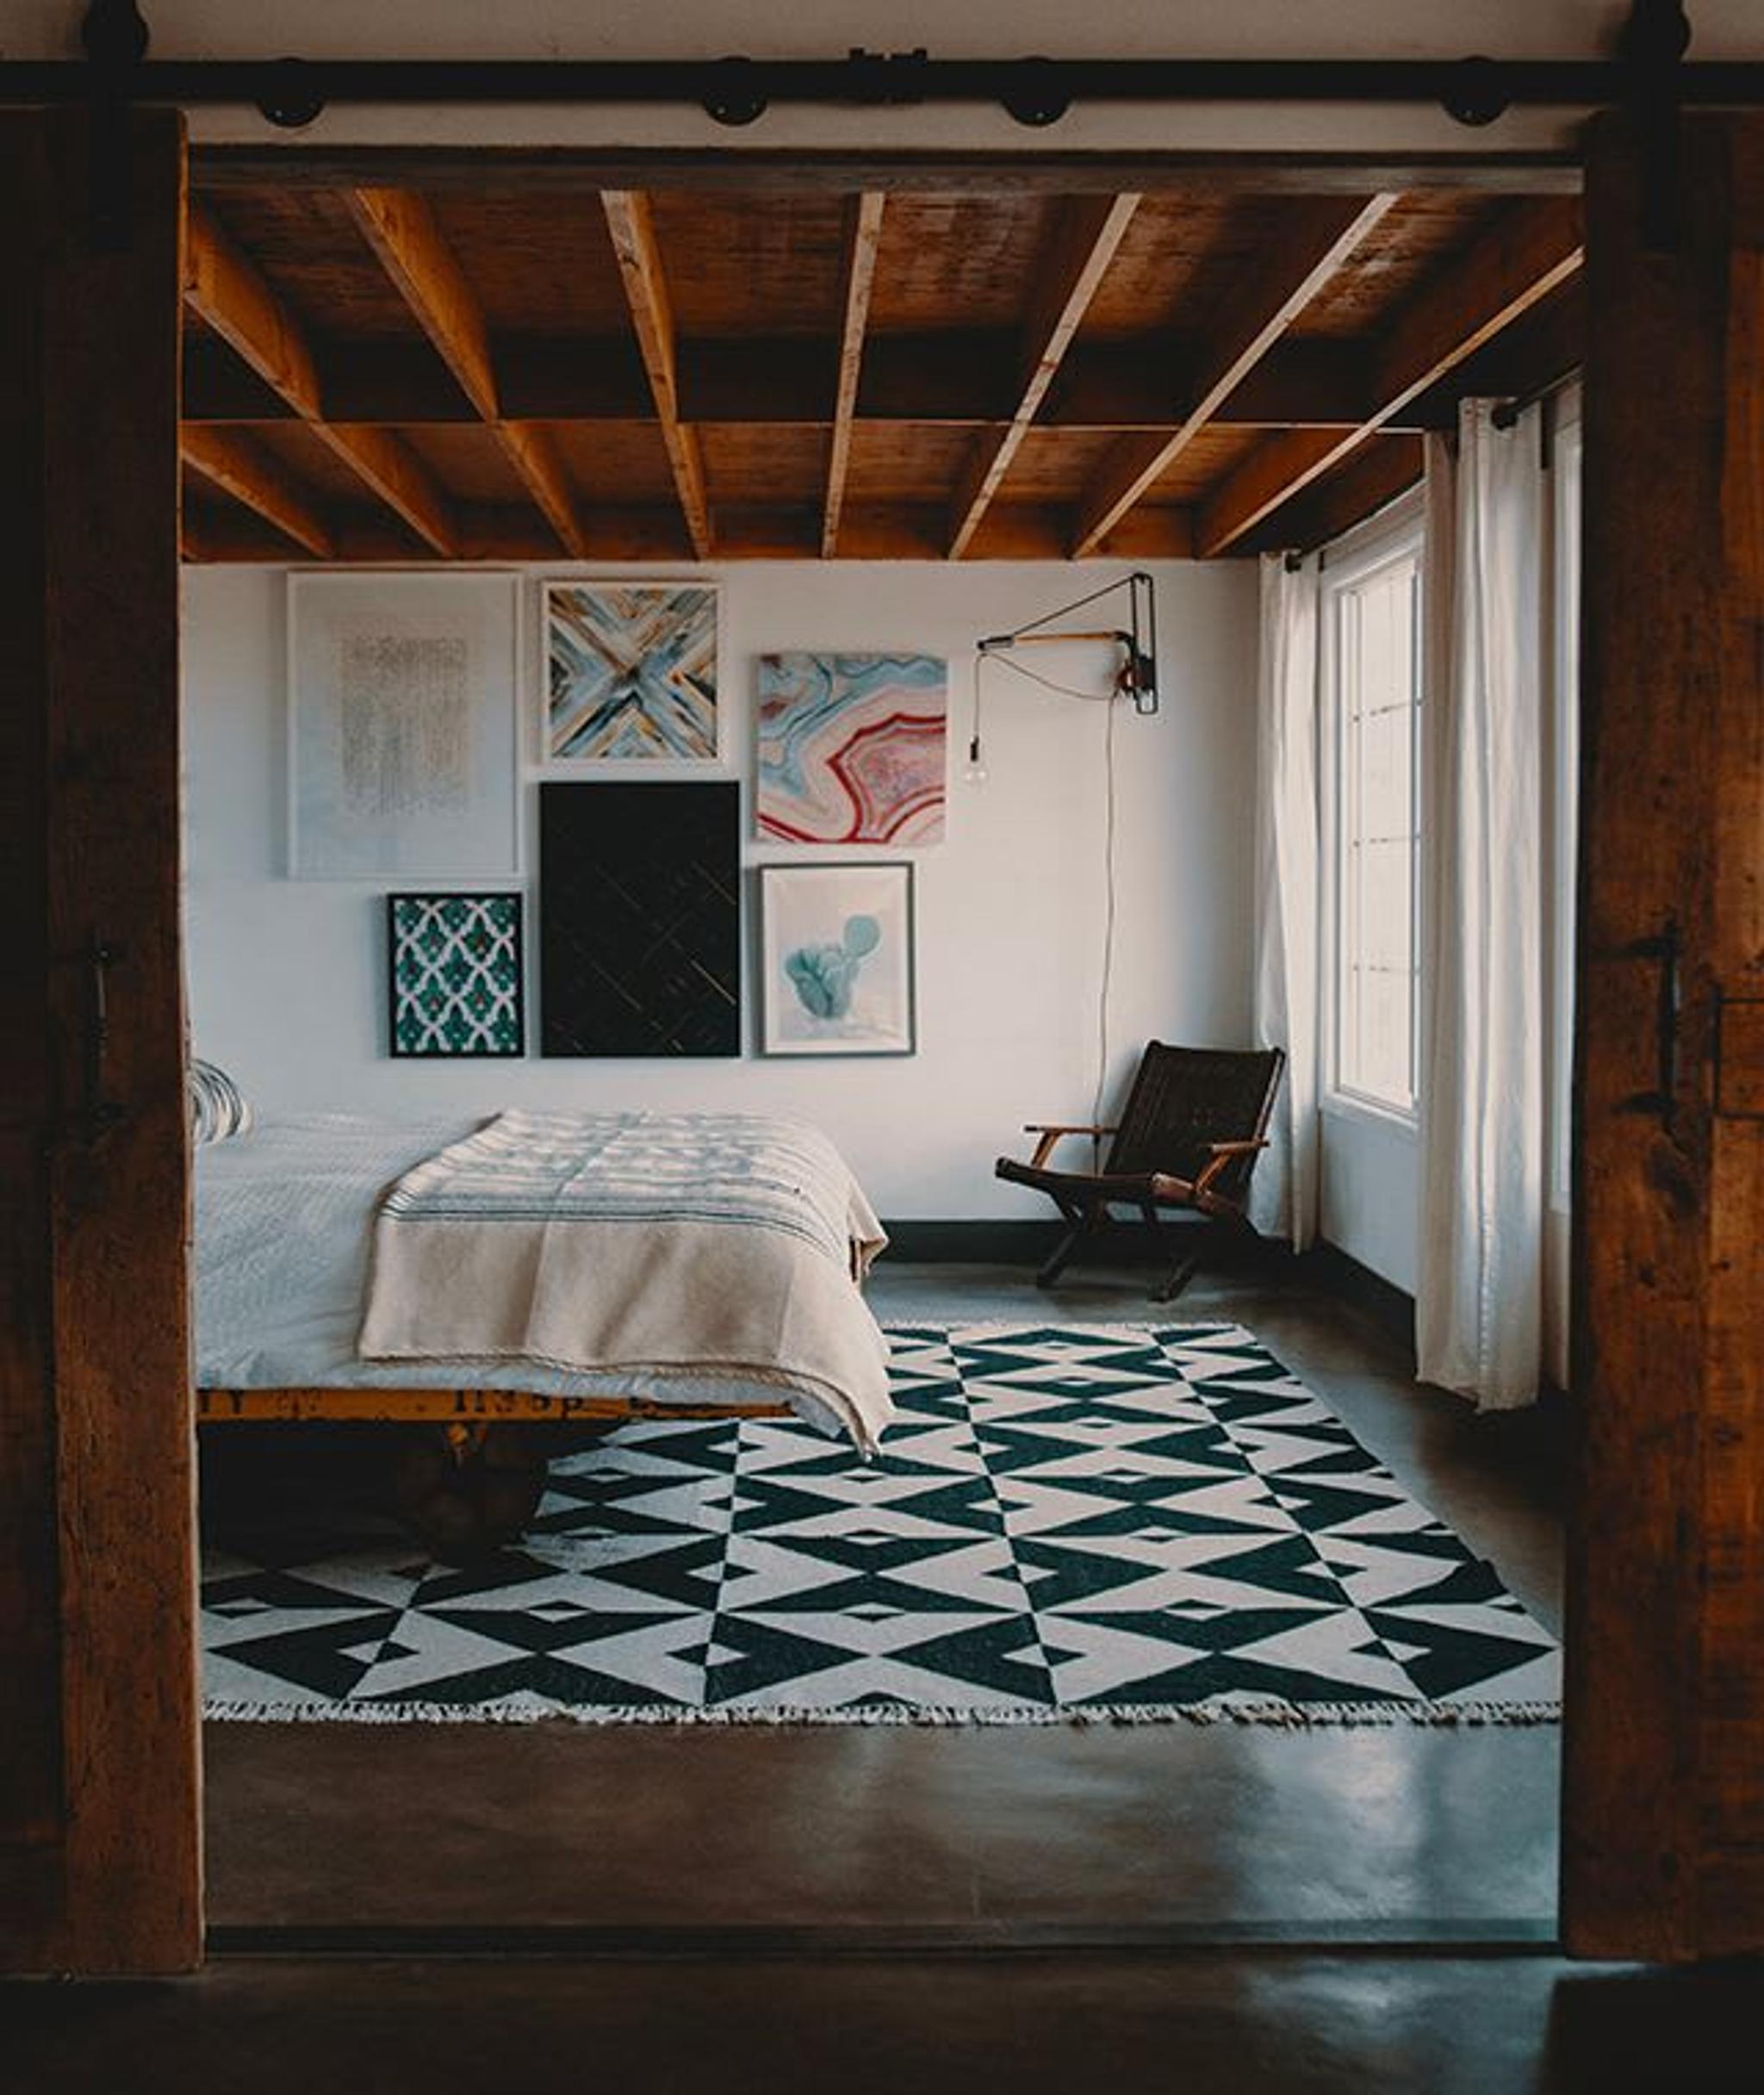 Interiores inspirados en las casas de Joshua Tree, Foto de Avi Richards